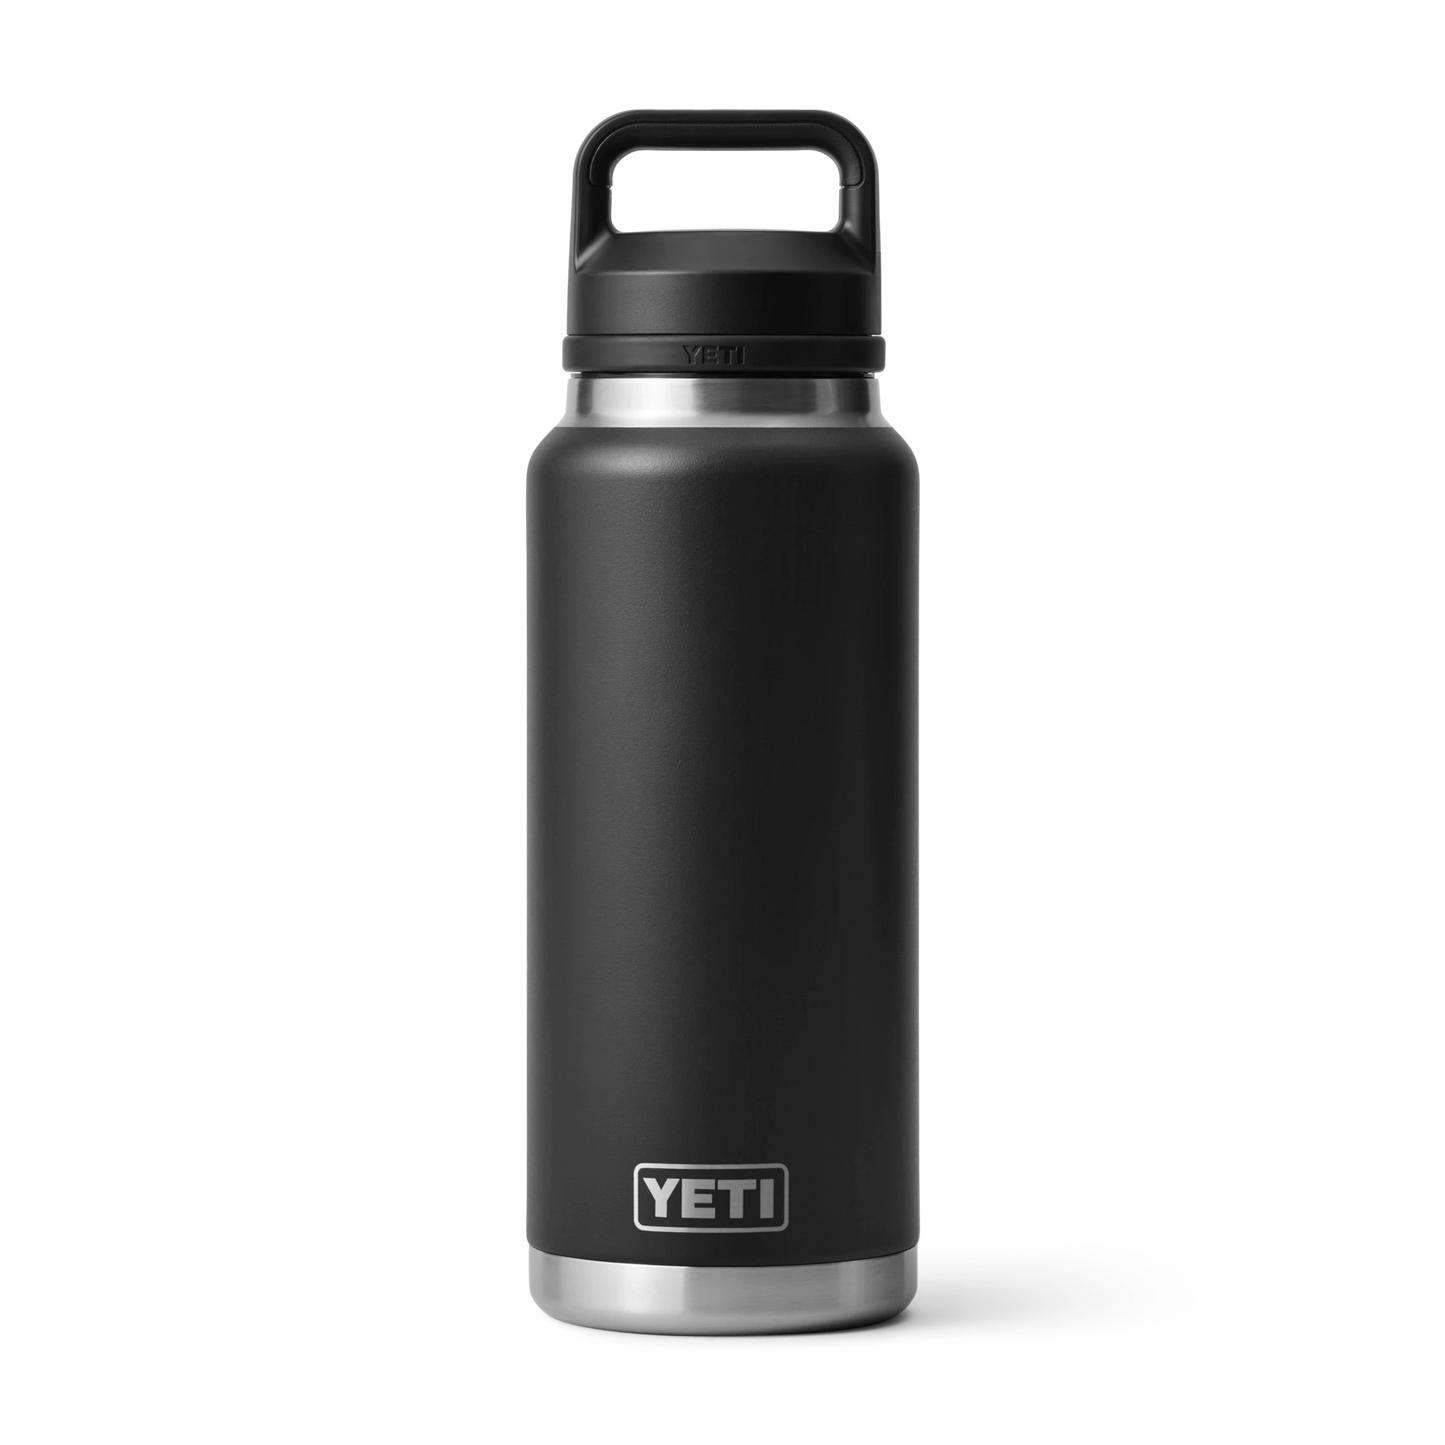 Yeti Rambler 36oz Water Bottle - Review & Test 